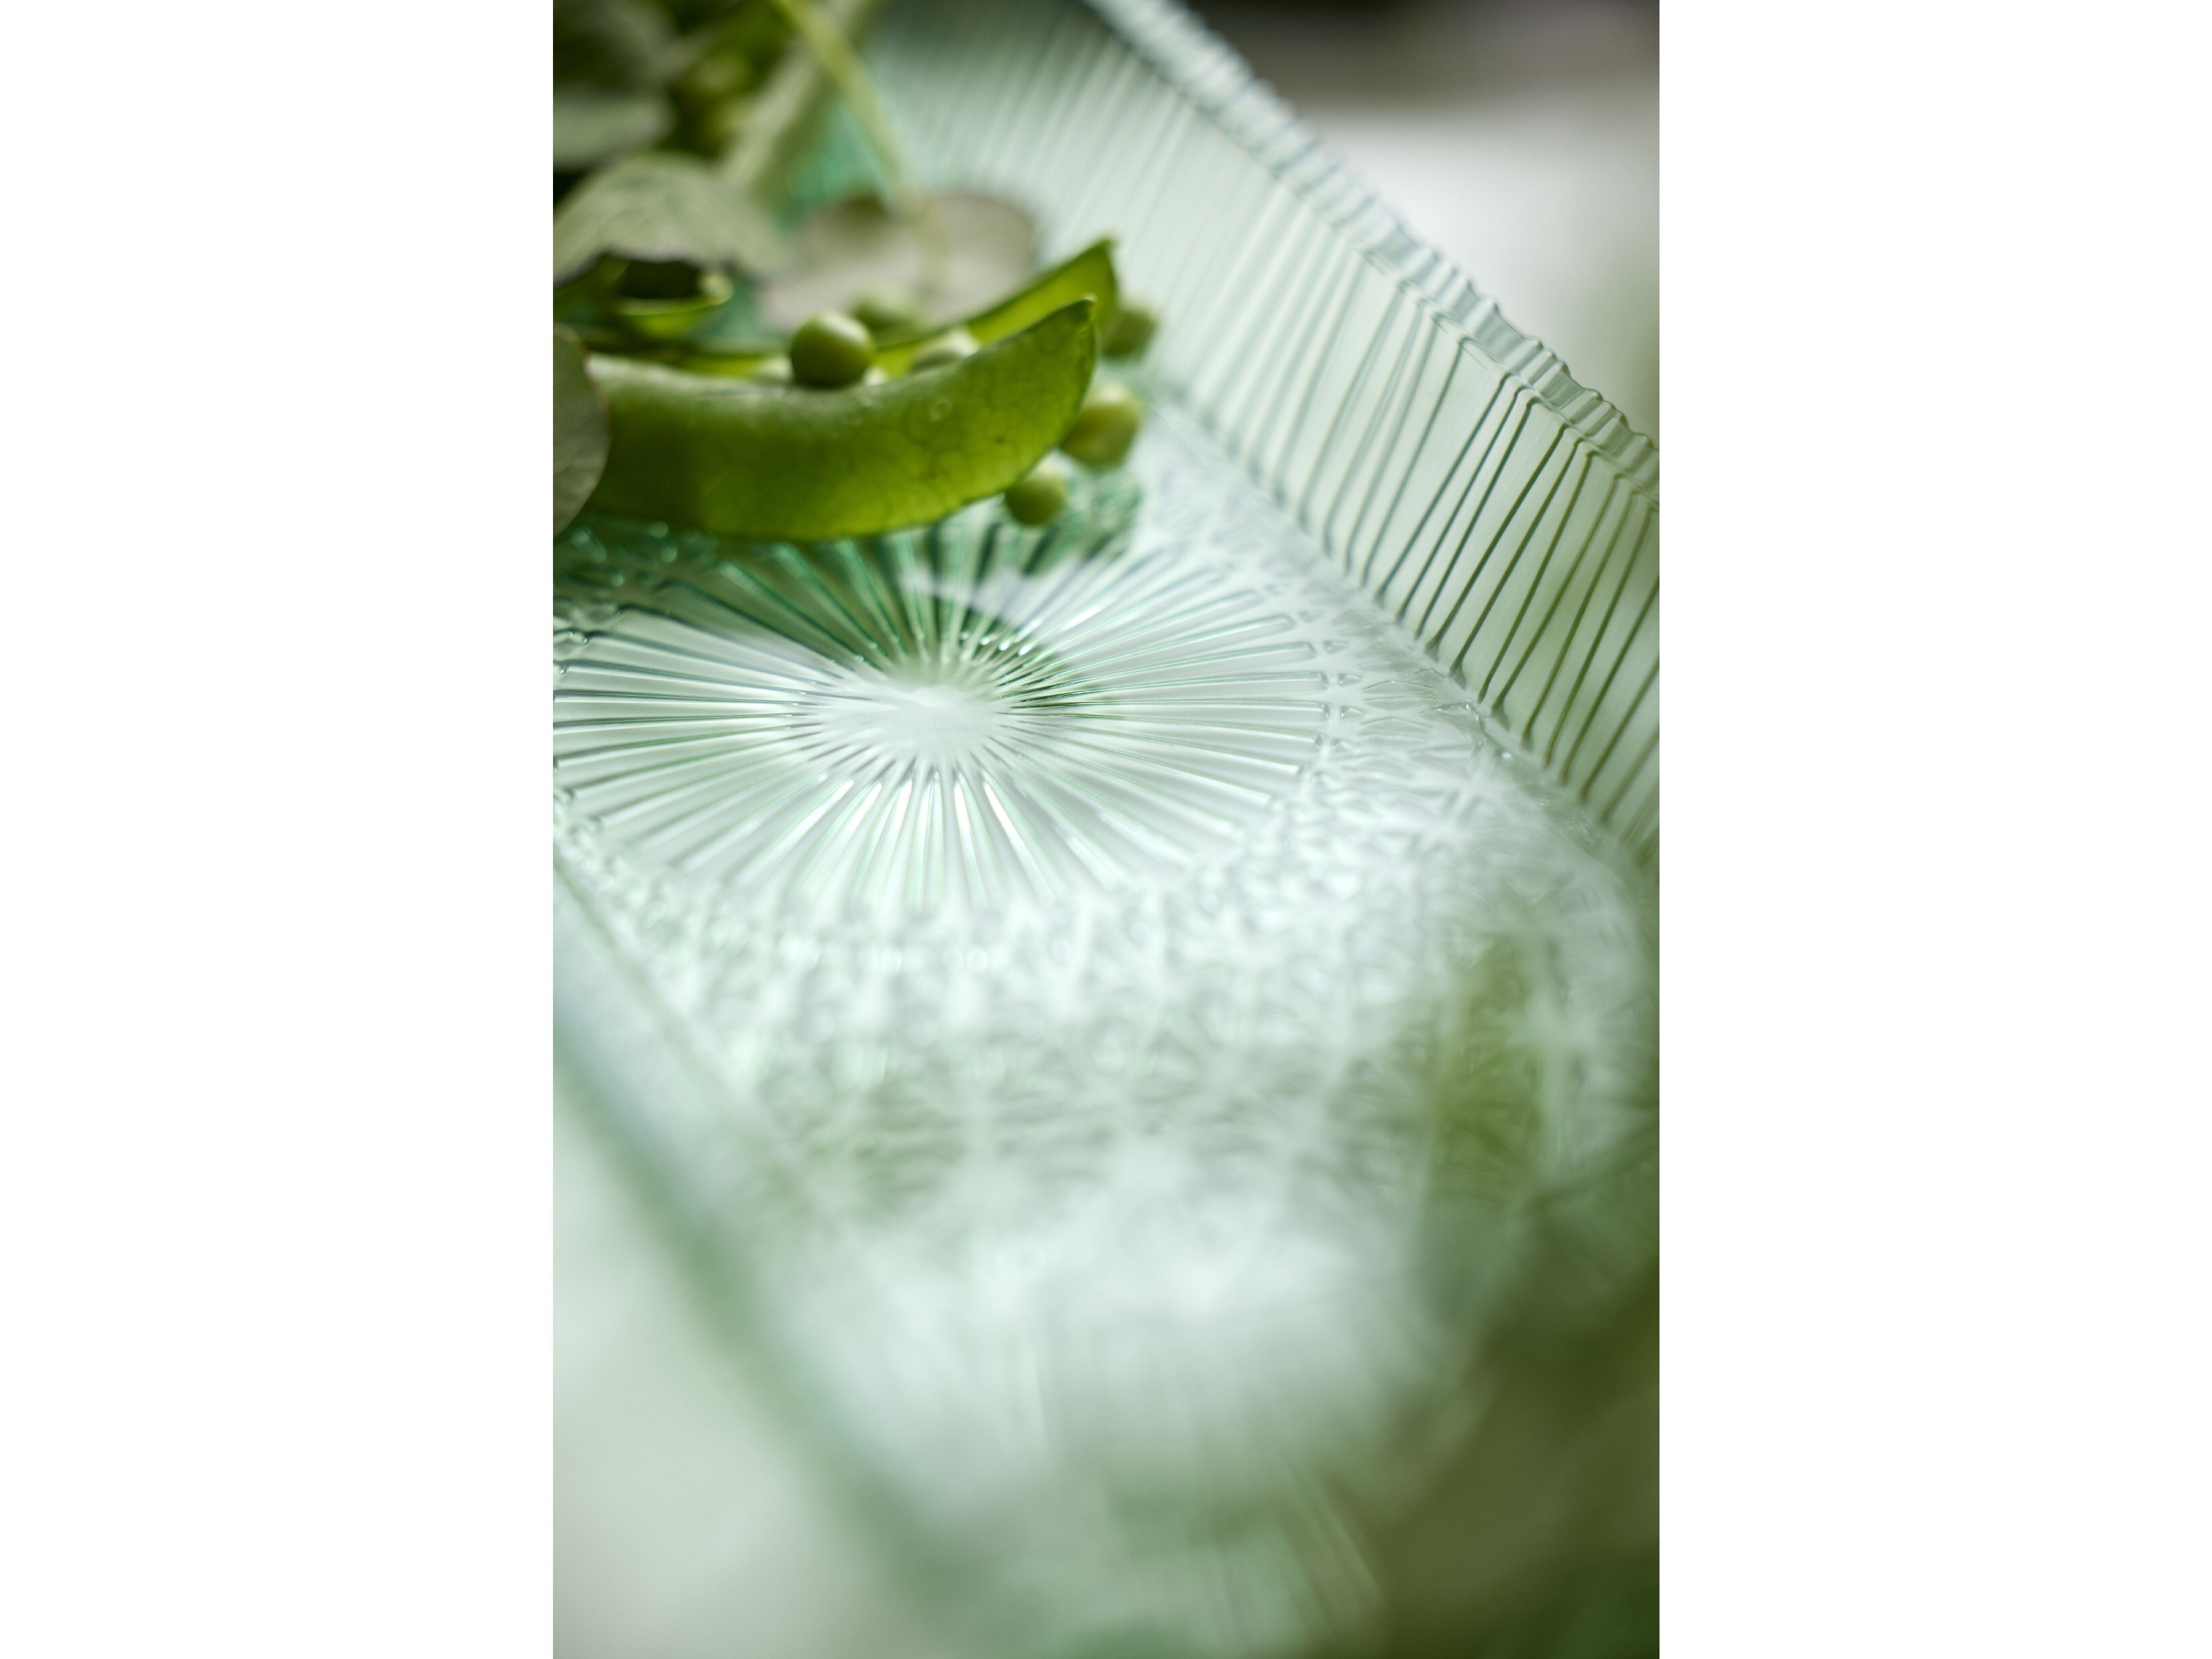 Bitz Kusintha serwowanie naczynia prostokątne 38 x 14 x 3 cm, zielone